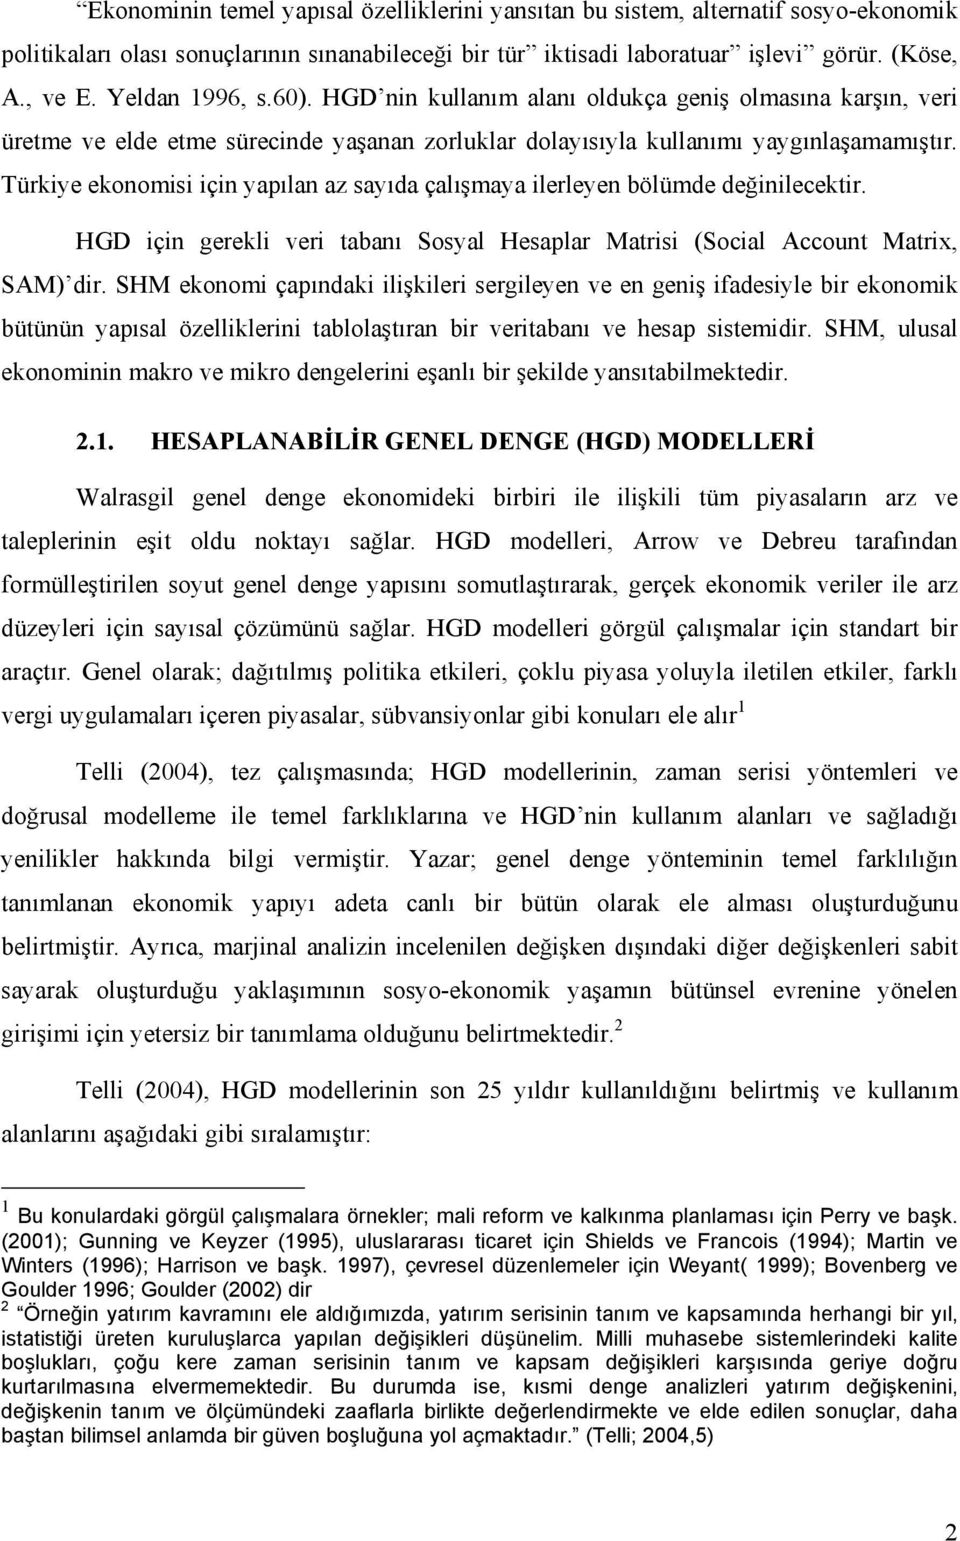 Türkiye ekonomisi için yapılan az sayıda çalışmaya ilerleyen bölümde değinilecektir. HGD için gerekli veri tabanı Sosyal Hesaplar Matrisi (Social Account Matrix, SAM) dir.